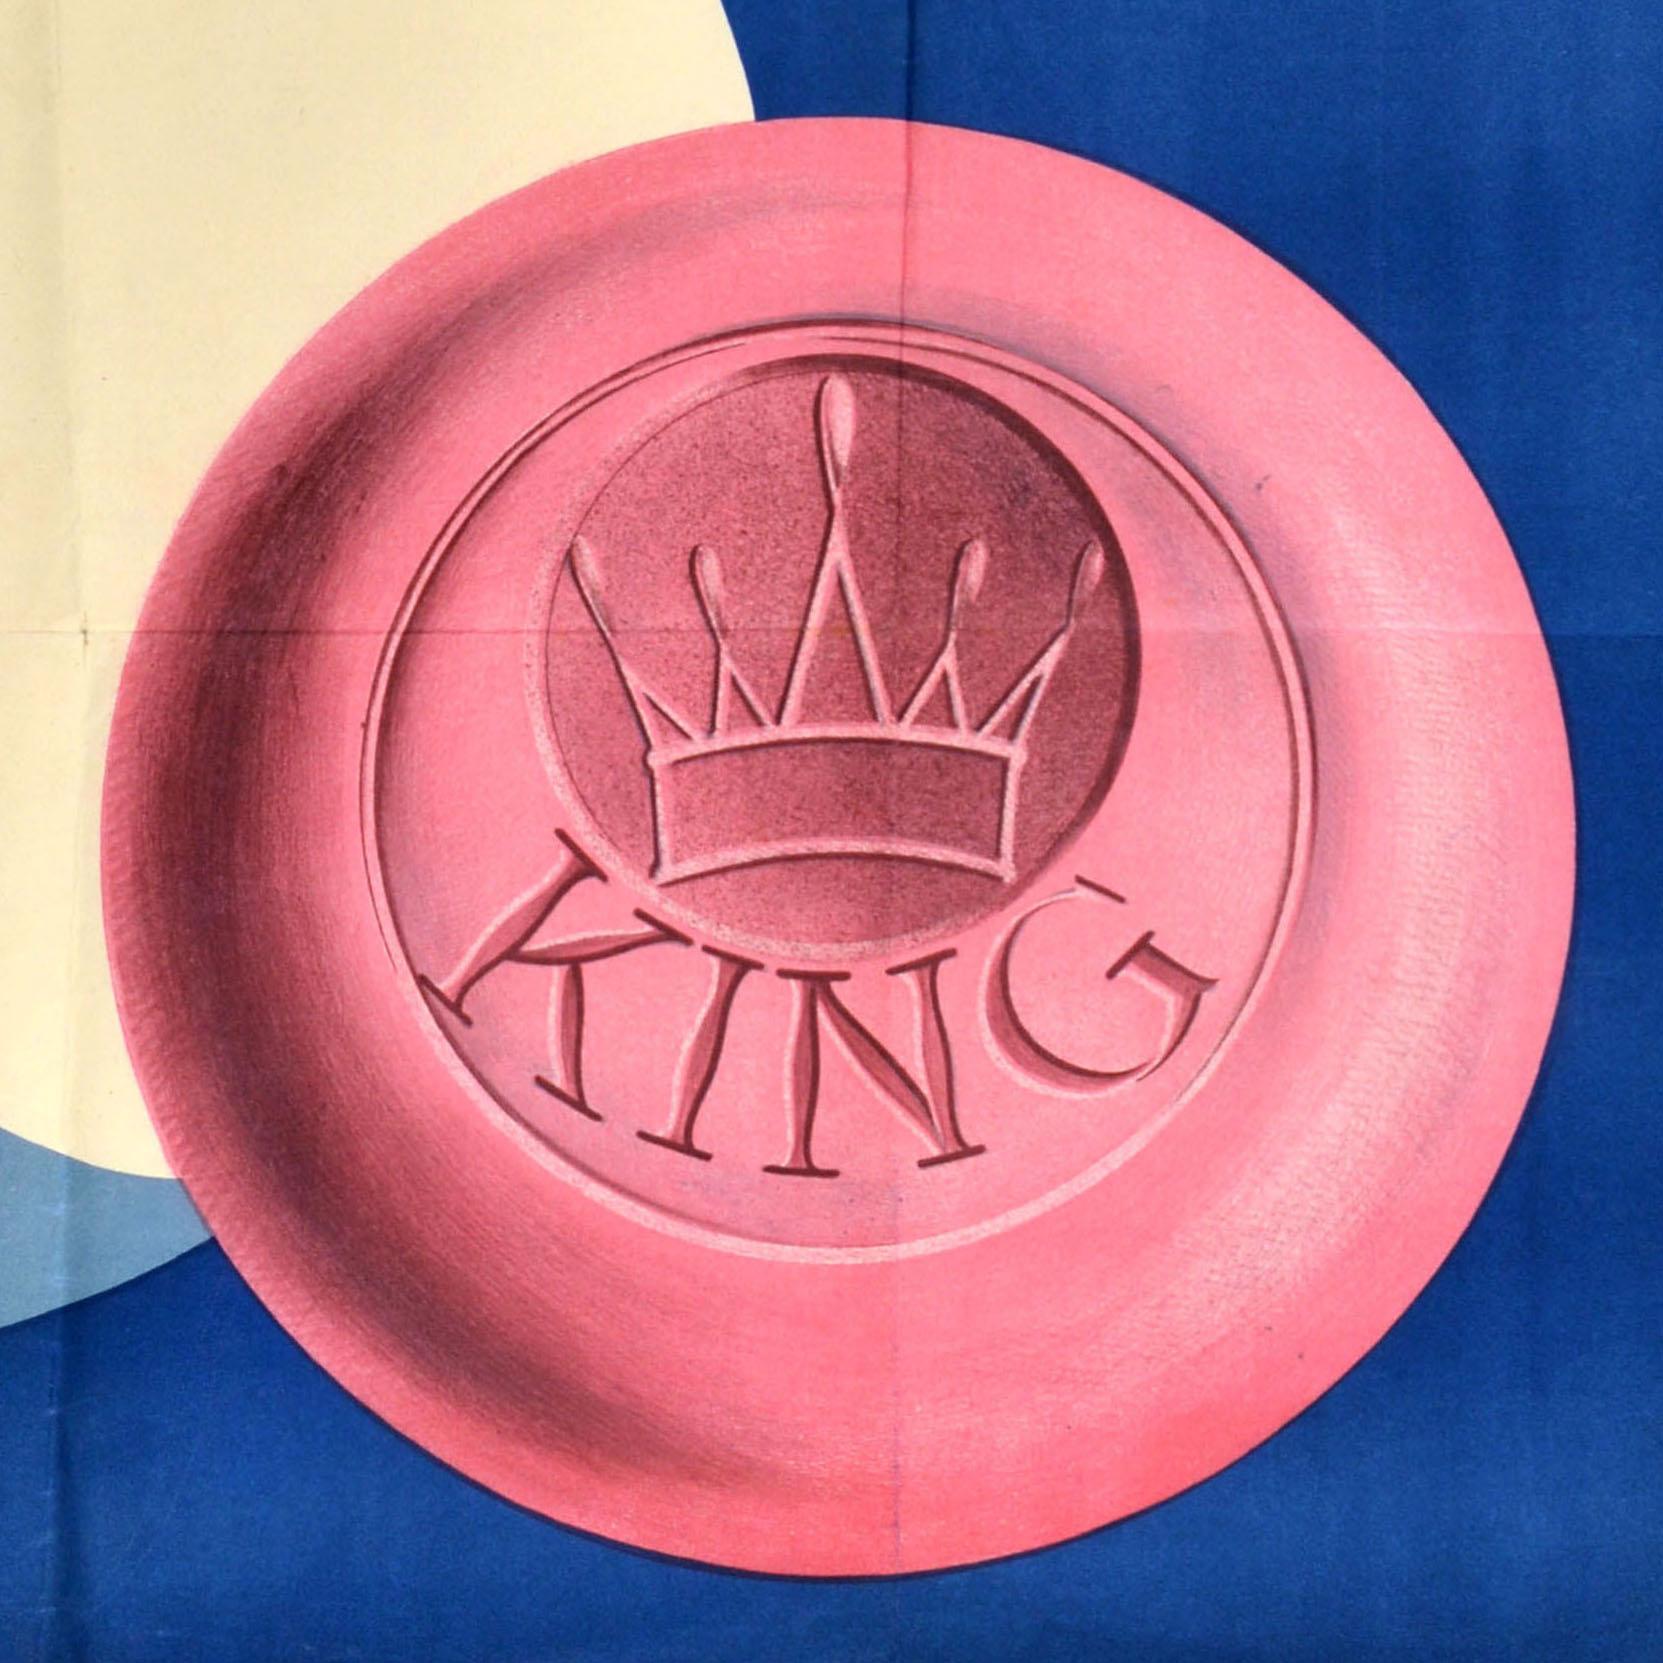 Originales antikes Werbeplakat für Bade Seife King mit einer farbenfrohen Illustration eines rosafarbenen runden Seifenstücks mit einer Krone und dem Markennamen King vor einer blauen Meereswelle mit einer Krone und einer Wasserspritze zwischen dem